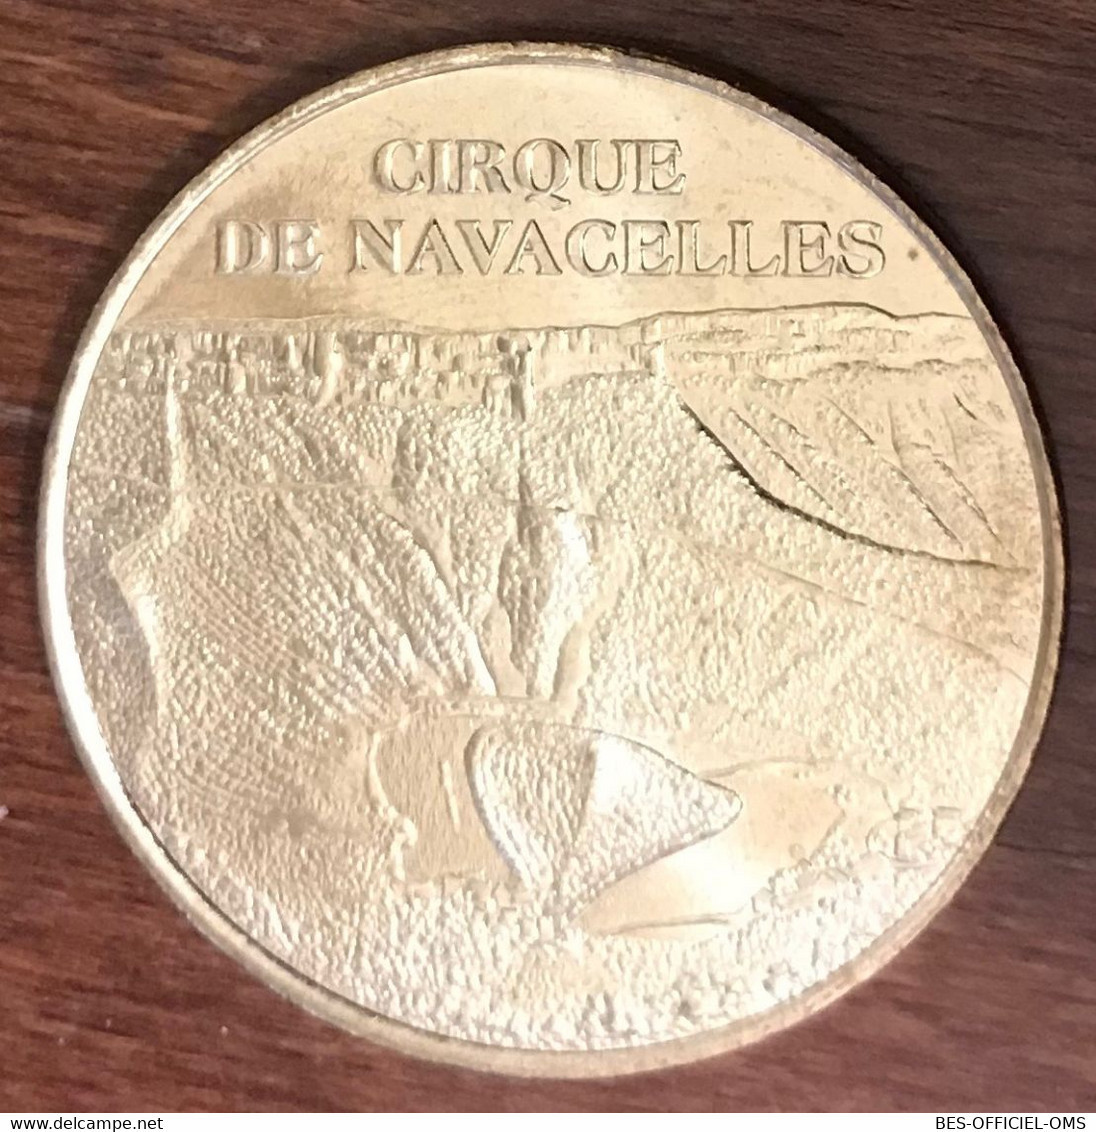 34 CIRQUE DE NAVACELLES MDP 2006 MINI MÉDAILLE SOUVENIR MONNAIE DE PARIS JETON TOURISTIQUE MEDALS COINS TOKENS - 2006